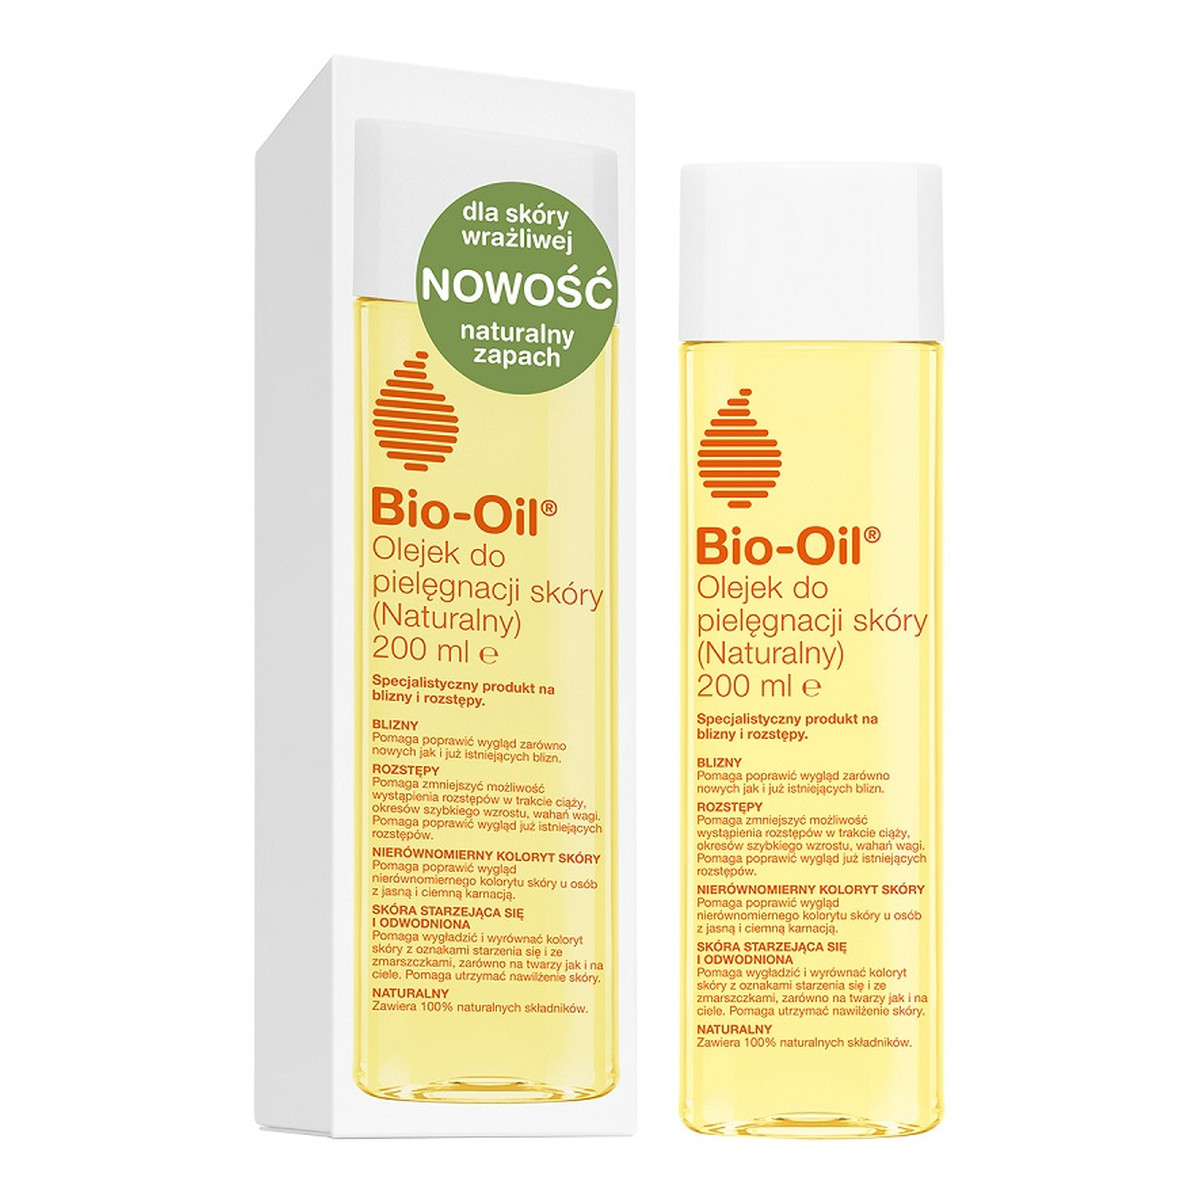 Bio-Oil Naturalny olejek do pielęgnacji skóry rozstępy ciąża 200ml